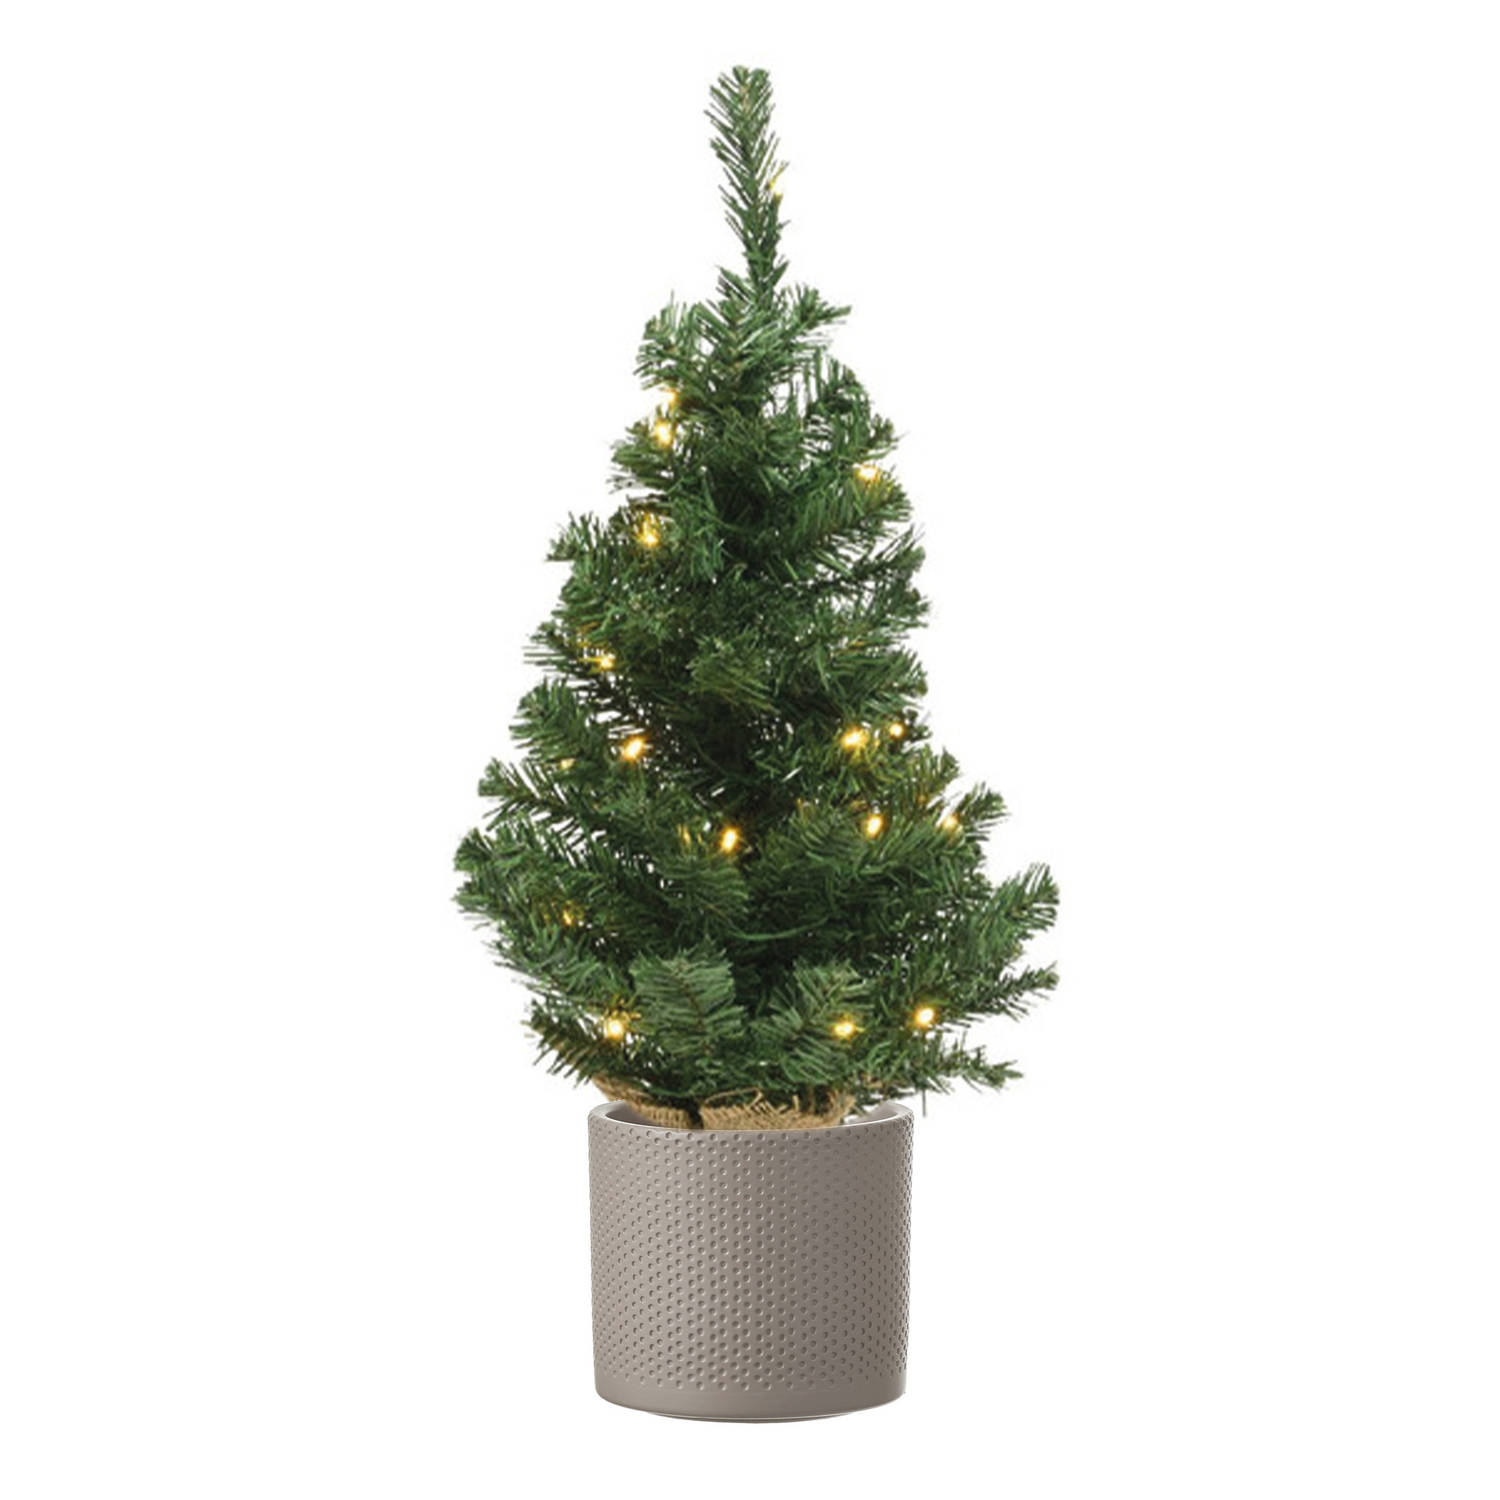 Volle kunst kerstboom 75 cm met verlichting inclusief taupe pot Kunstkerstboom